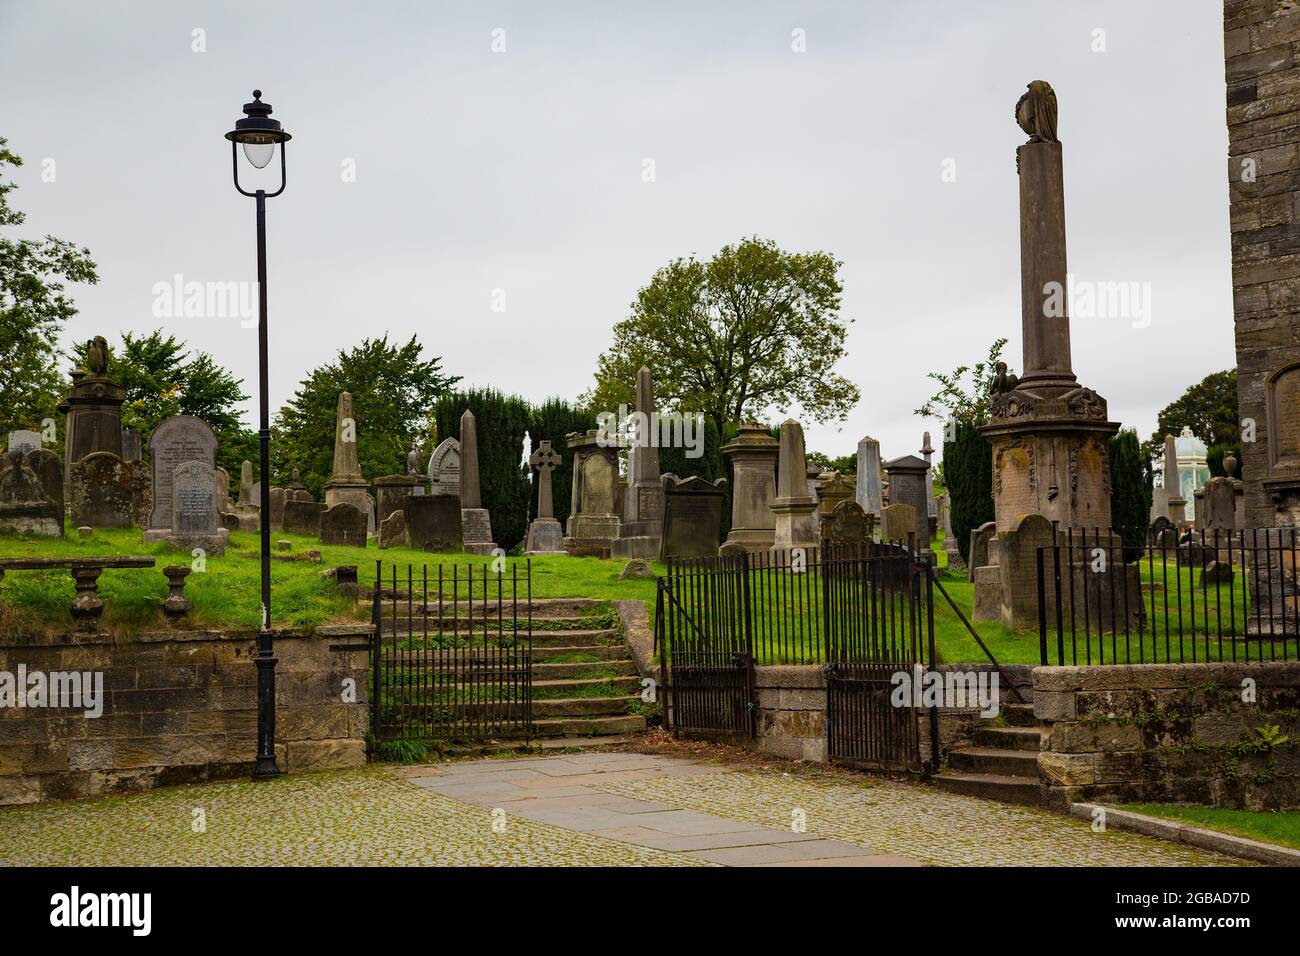 Cementerio de corte gótico con lápidas en forma de piedra y monolitos, en pradera con entrada de barrotes de hierro e iglesia detrás. Stock Photo